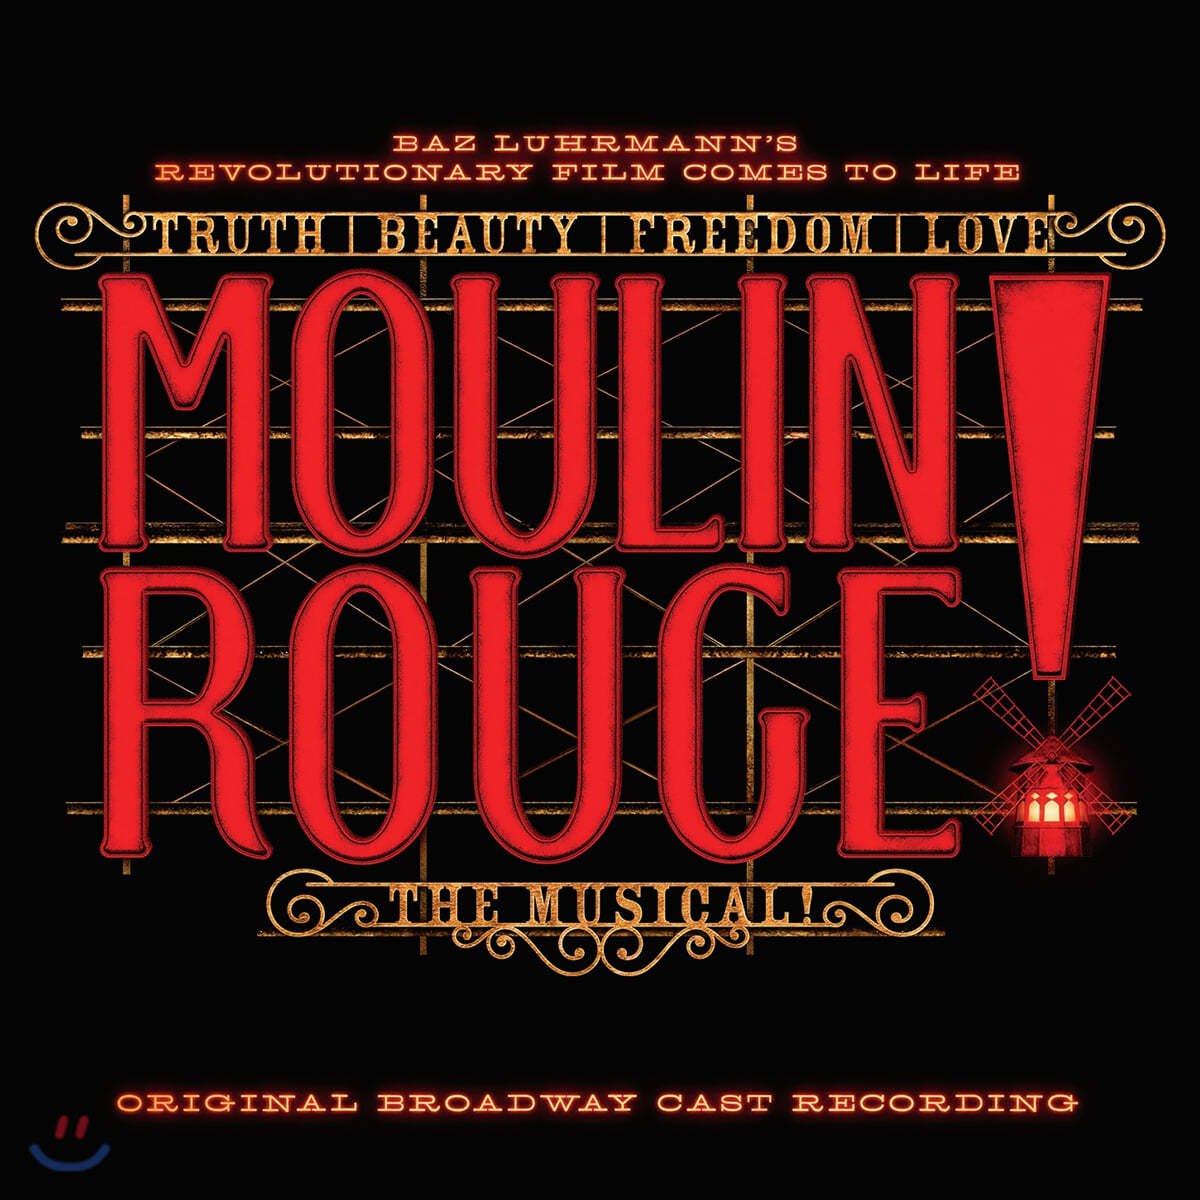 물랑 루즈 뮤지컬음악 - 오리지널 브로드웨이 캐스트 (Moulin Rouge! The Musical Original Broadway Cast Recording OST)